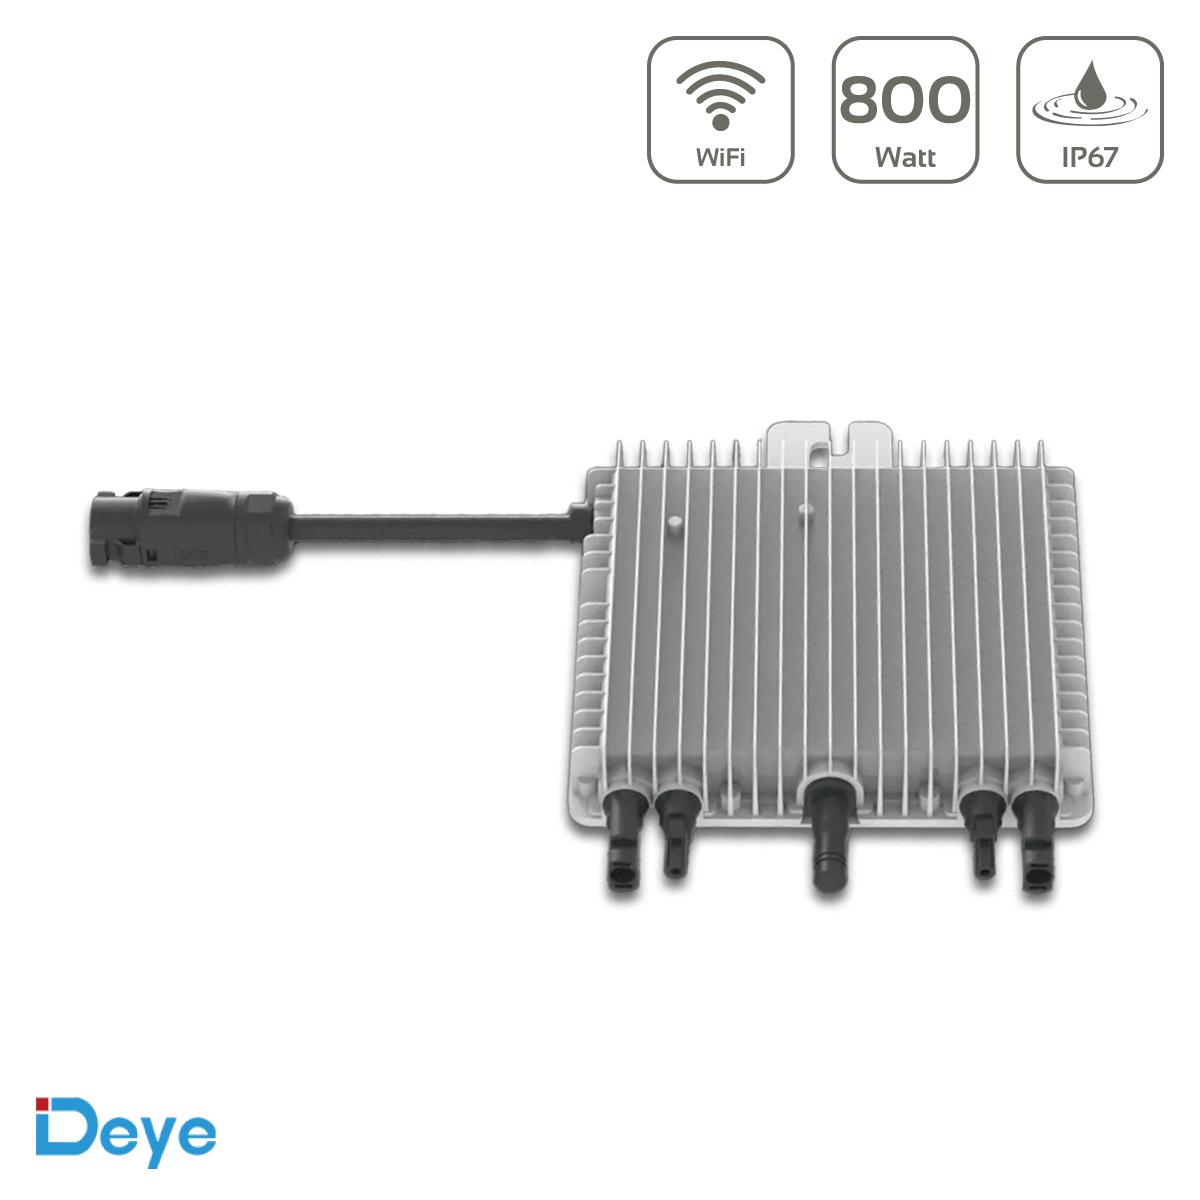 Deye SUN-M80G3-EU-Q0 Mikroinverter neues Modell Wechselrichter 800W mit WiFi - MwSt: 0% NUR für Privatkunden